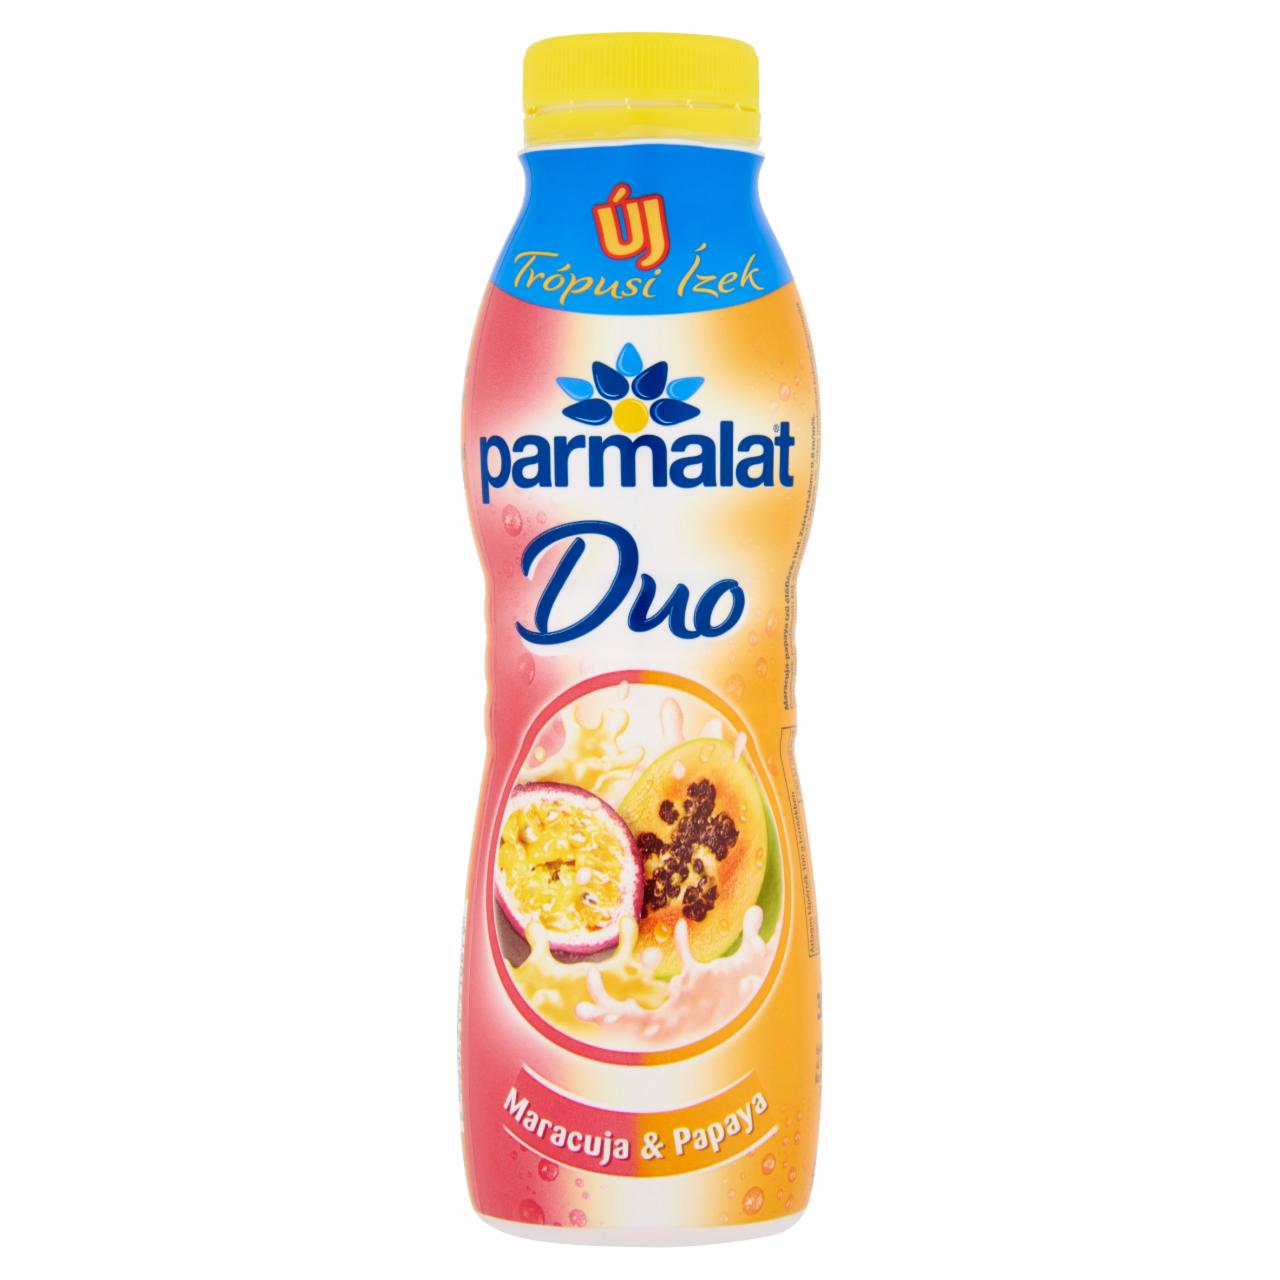 Képek - Parmalat Duo maracuja-papaya ízű élőflórás ital 350 g